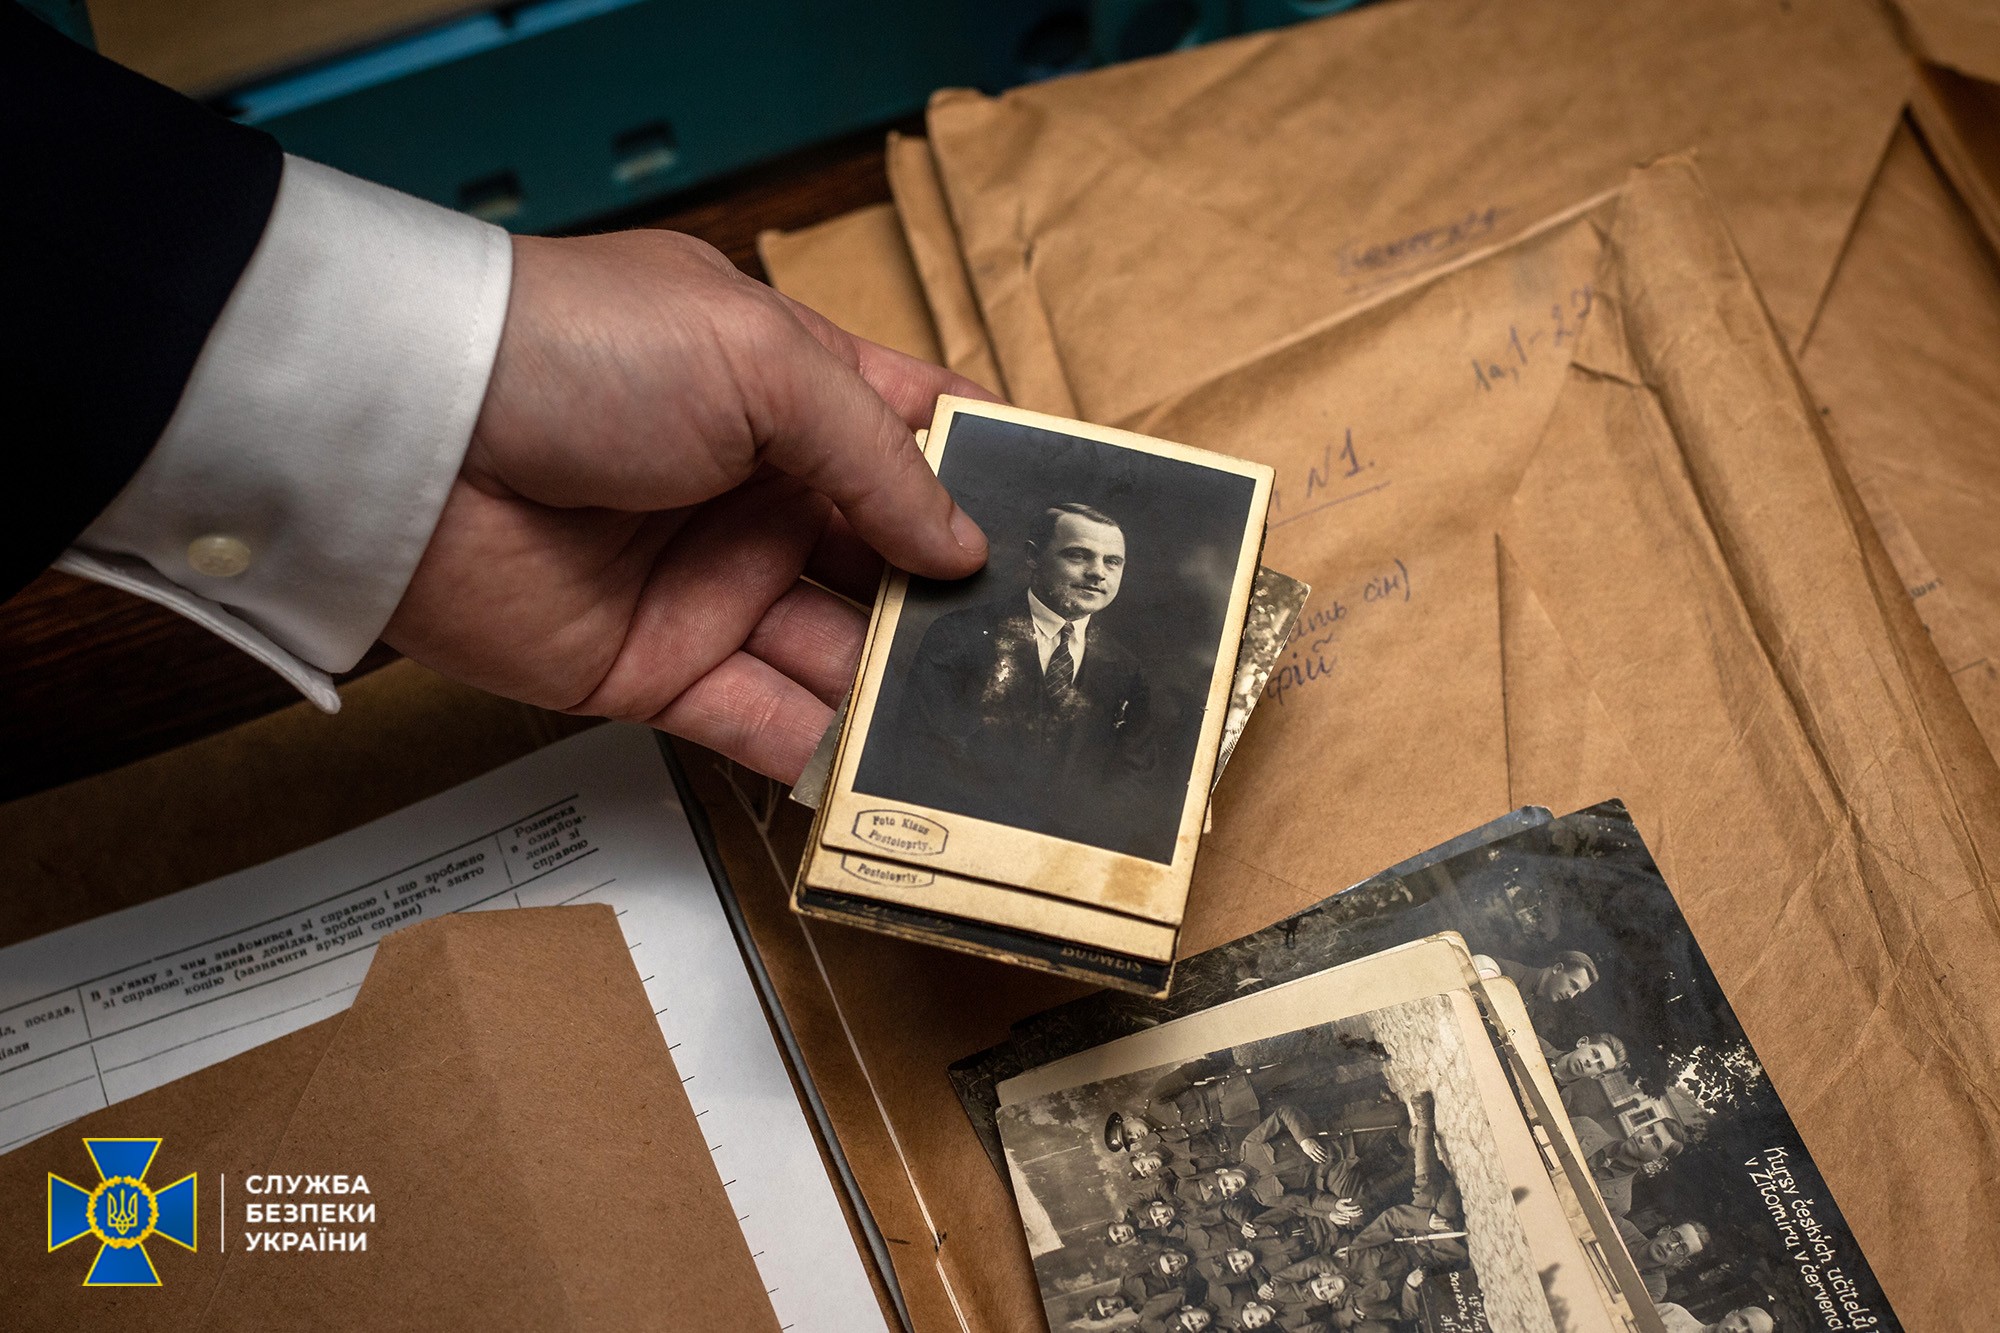 Фото: в Архиве удалось обнаружить и оцифровать более 8 тыс. архивных дел на репрессированных чехов